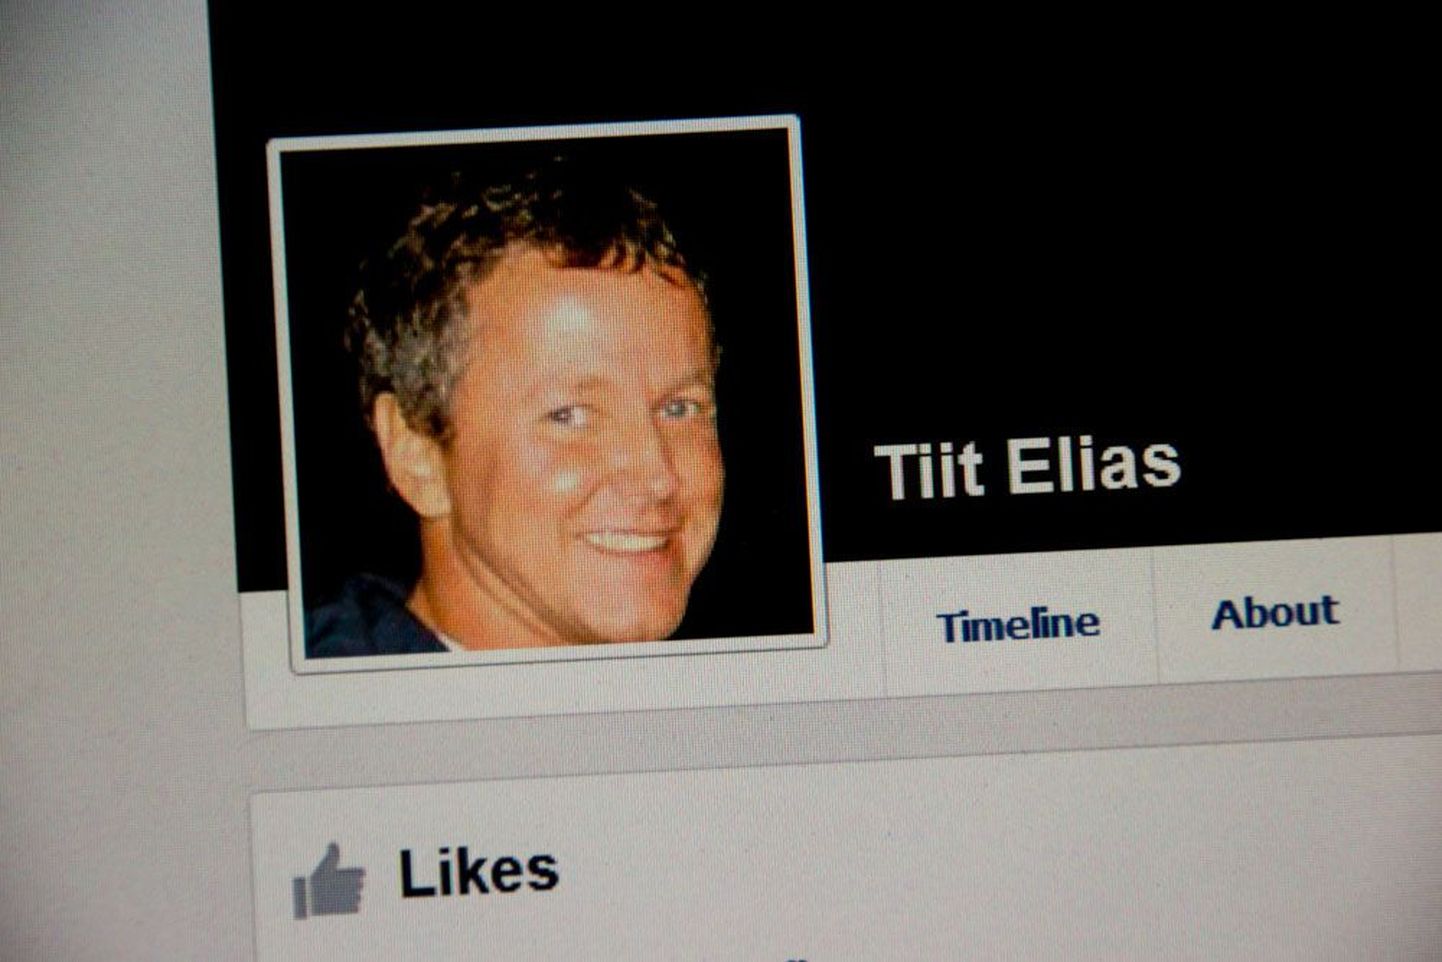 Tiit Elias